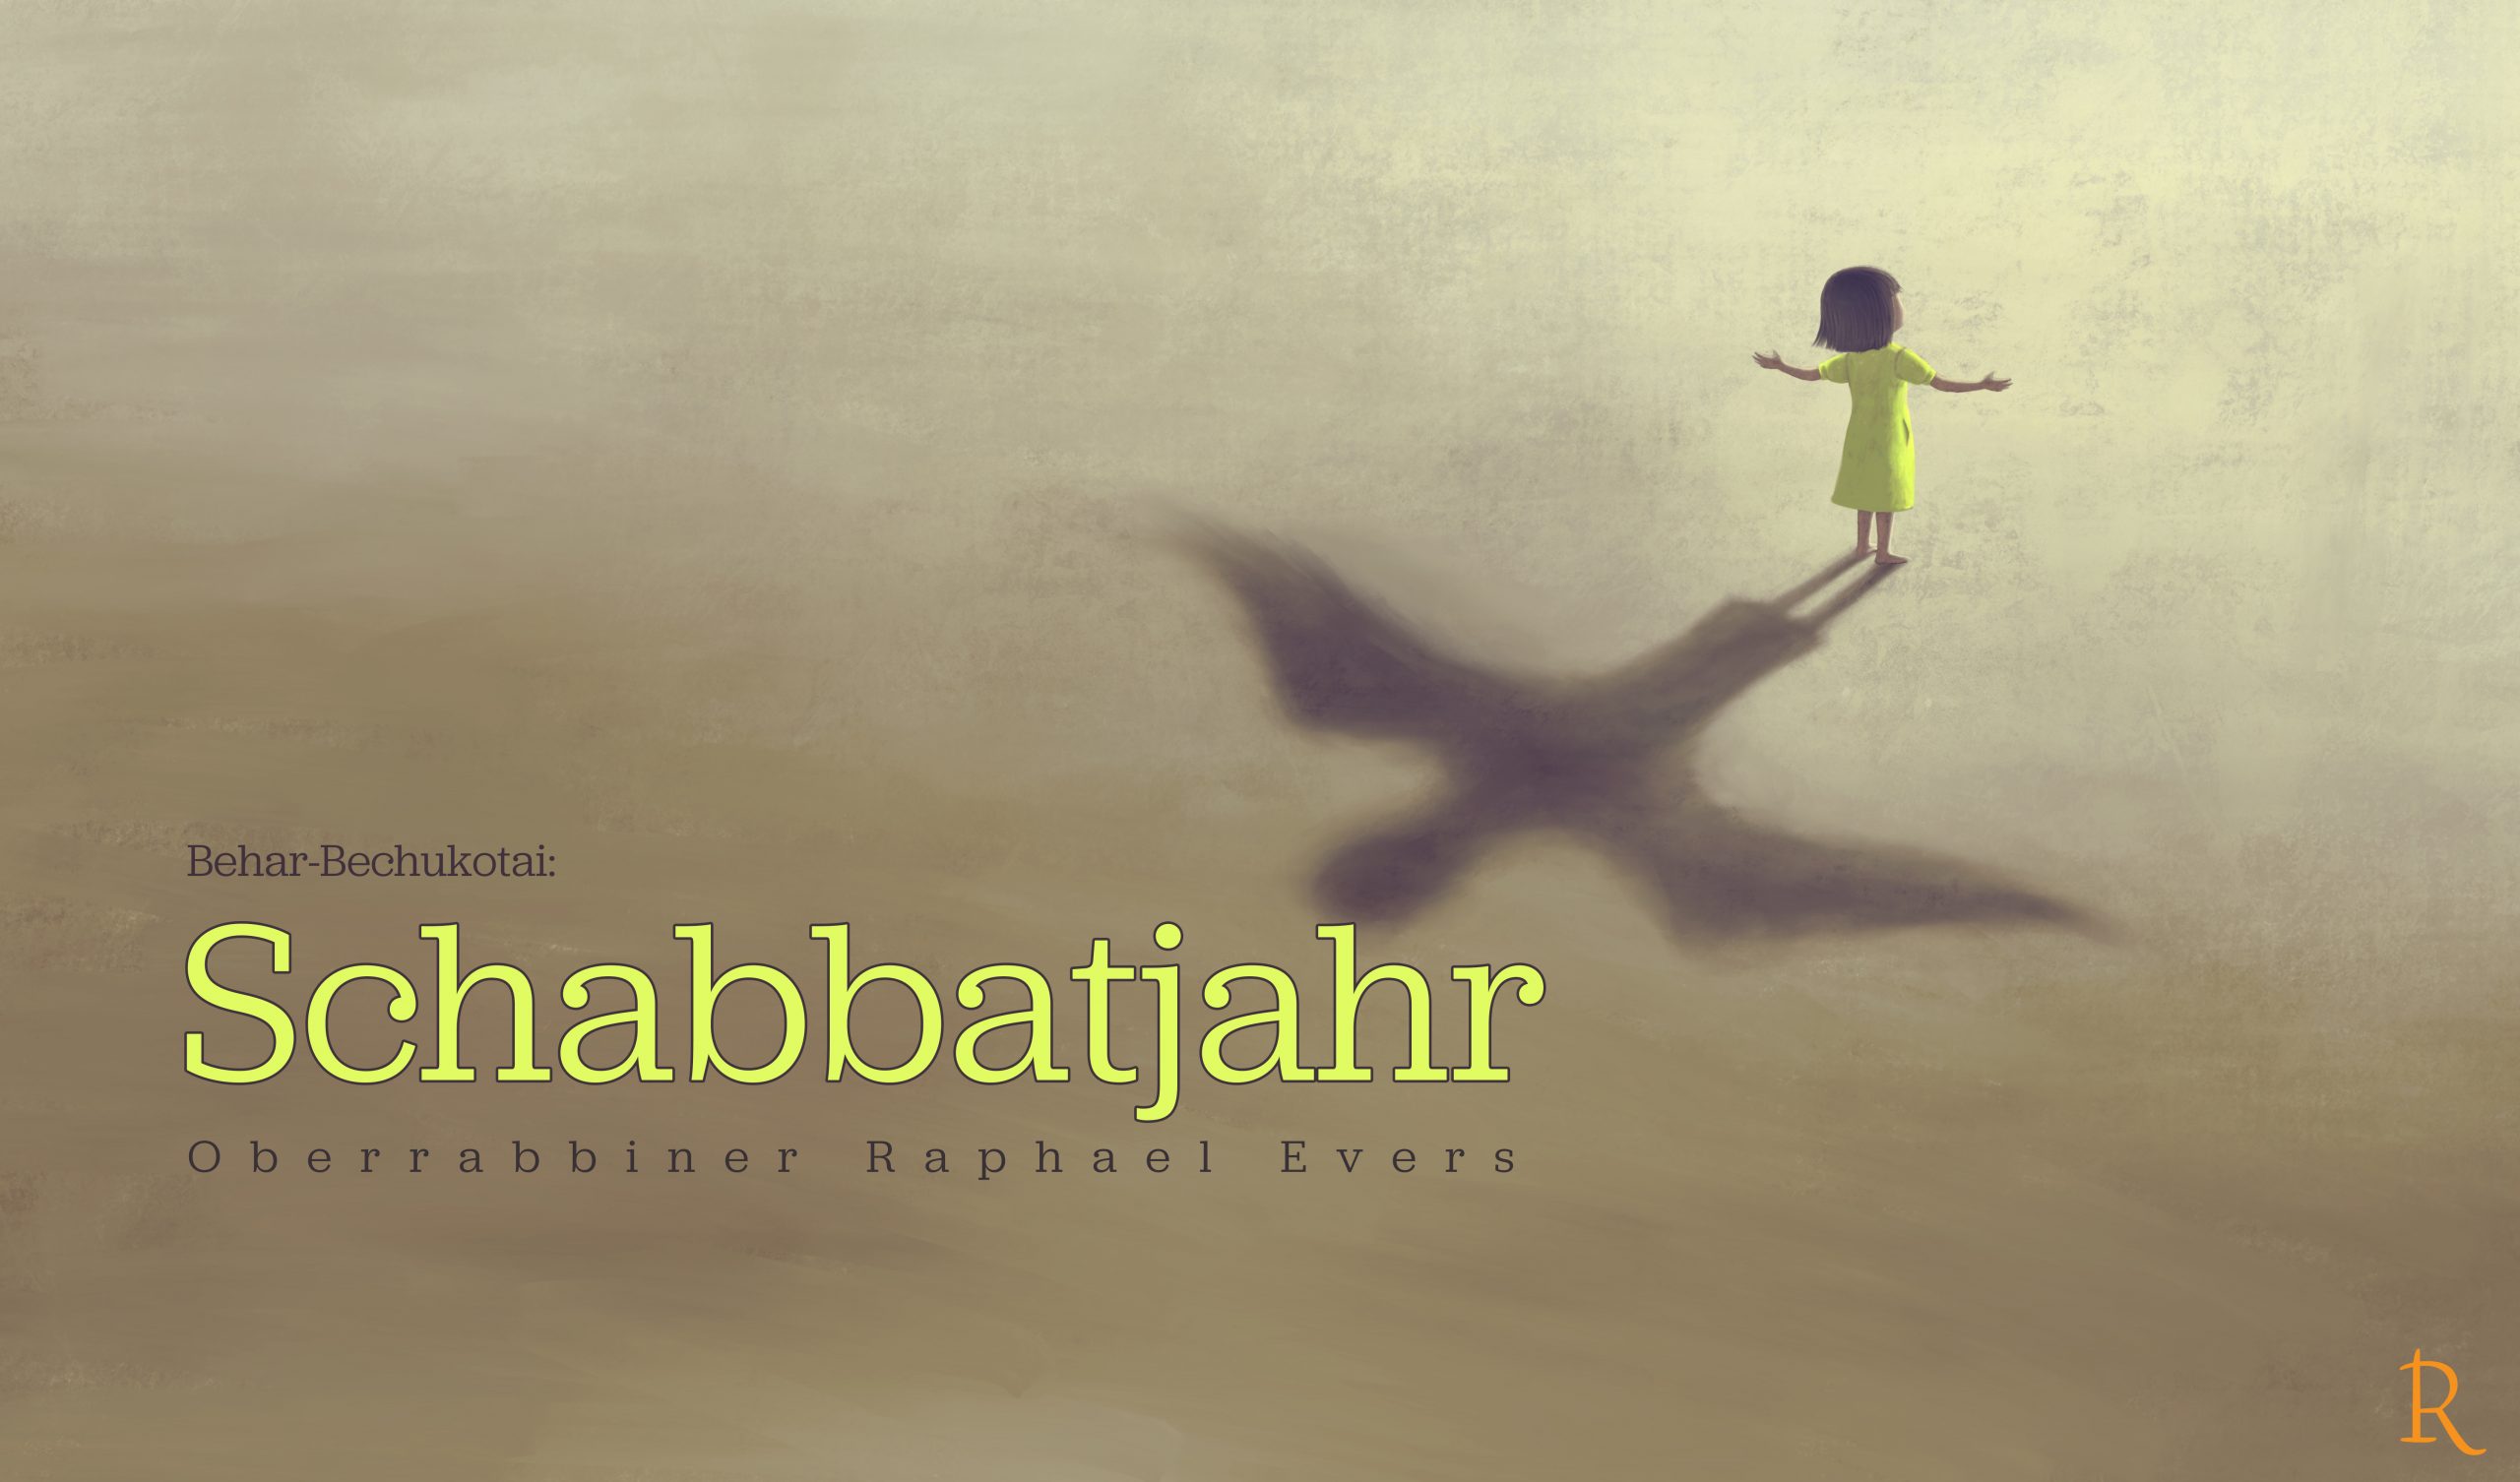 Behar-Bechukotai: ein Schabbat-Jahr (Schemitta) für das Land